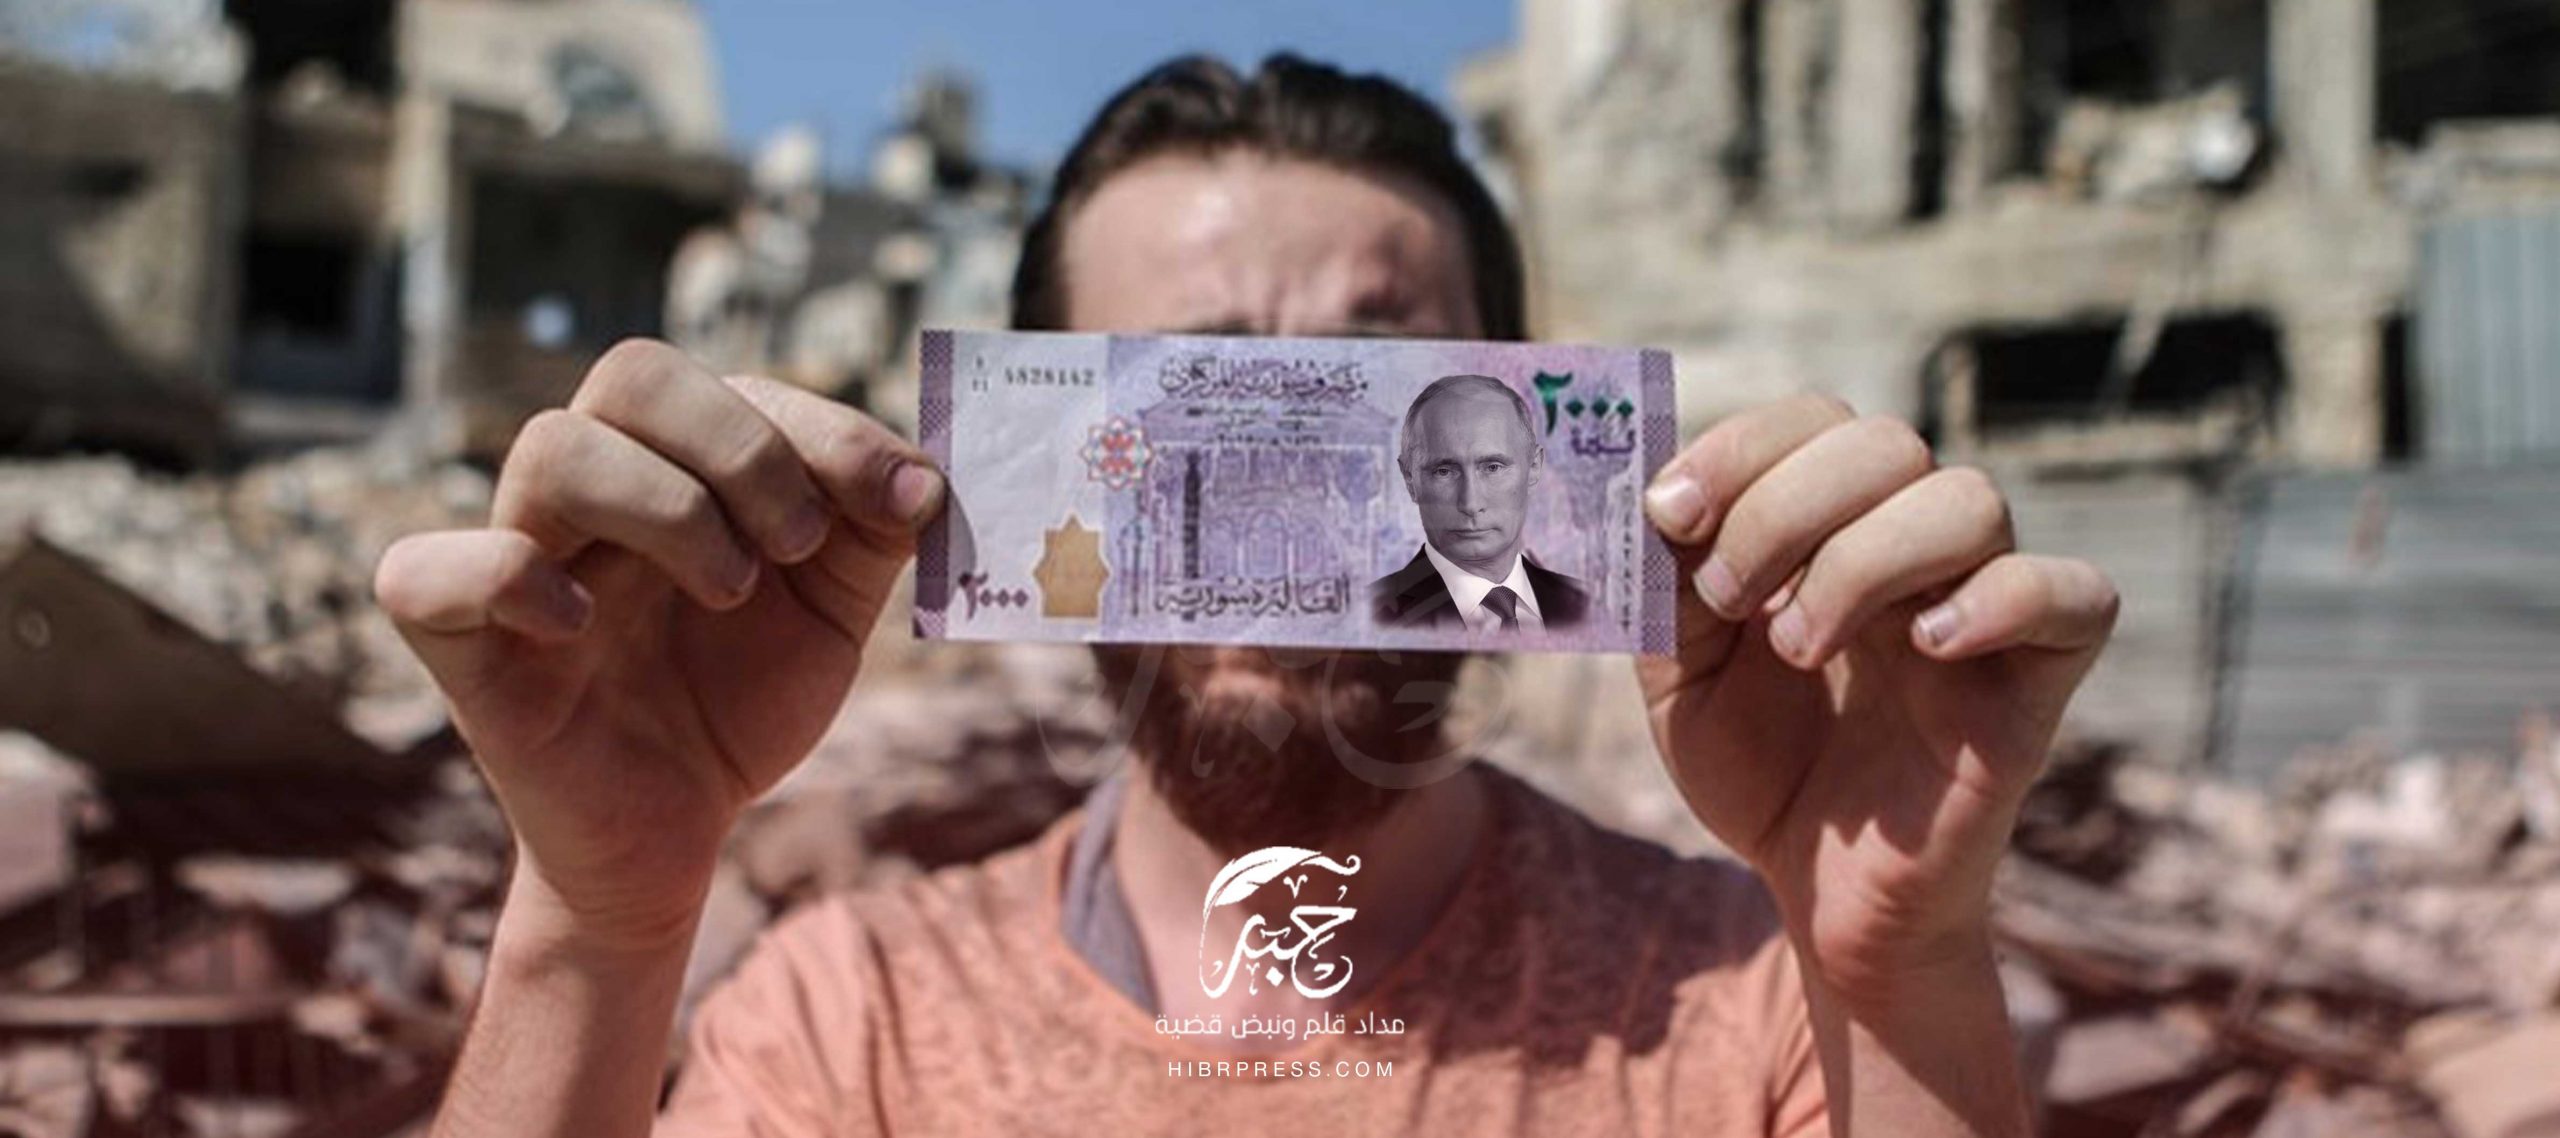 حققت الليرة السورية مكاسب جديدة أمام الدولار الأمريكي في التداولات الصباحية للأسواق السورية صباح اليوم السبت بعد منعطف حرج خلال الأيام السابقة.